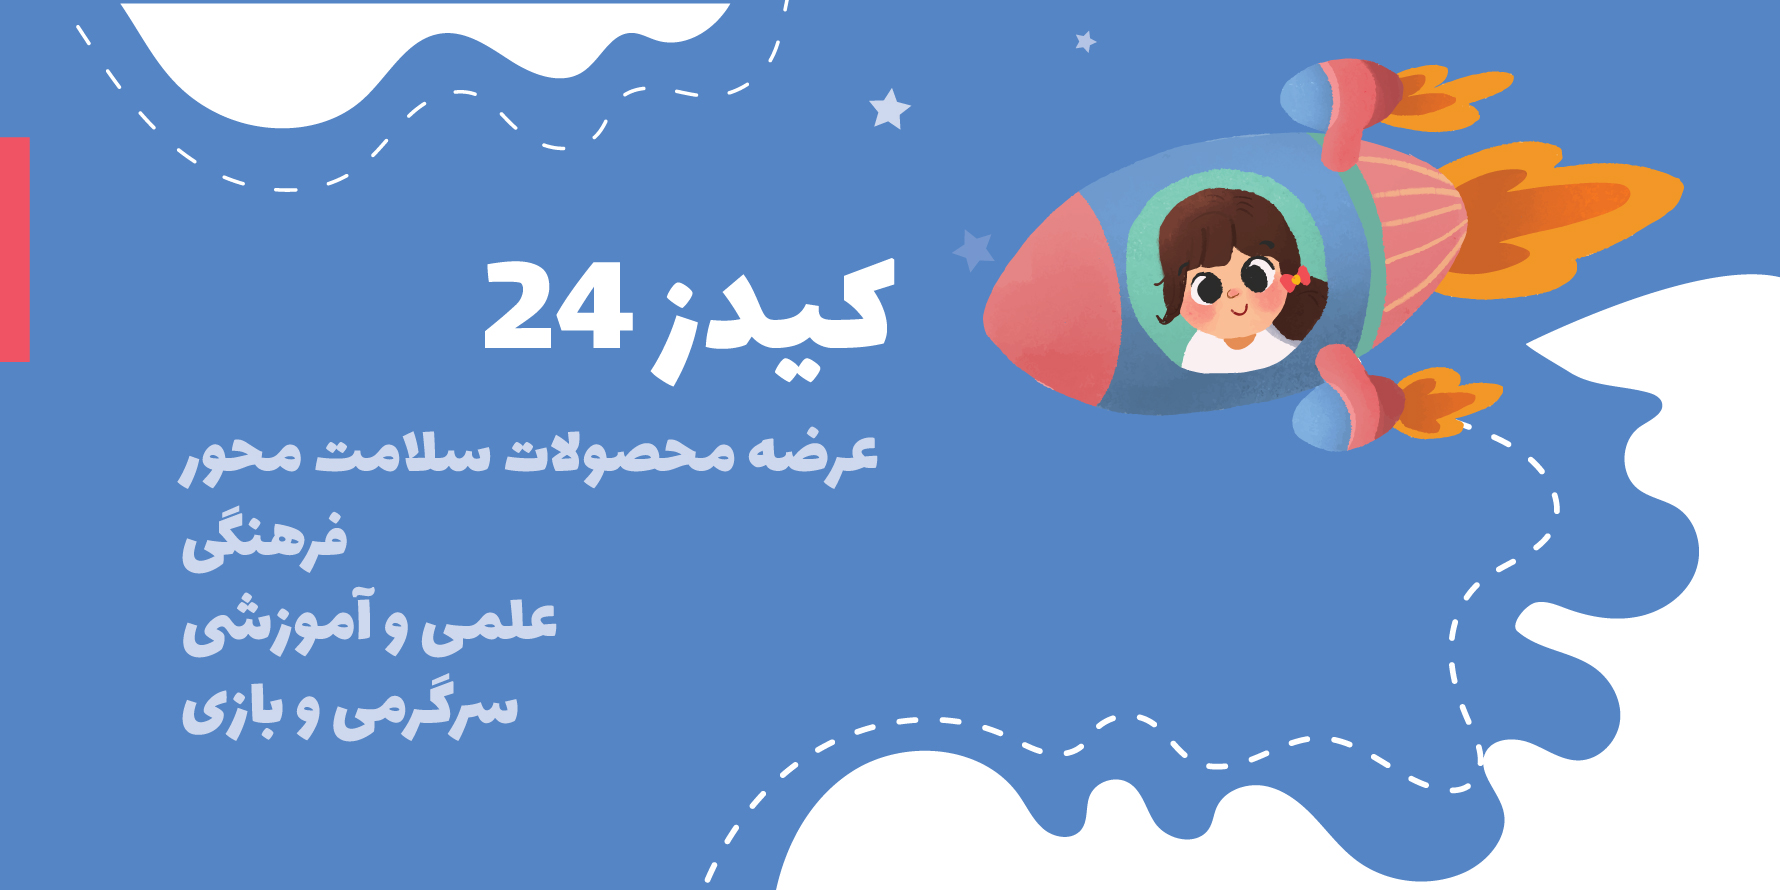 فروشگاه محصولات مادر و کودک کیدز 24 برای خانواده های ایرانی